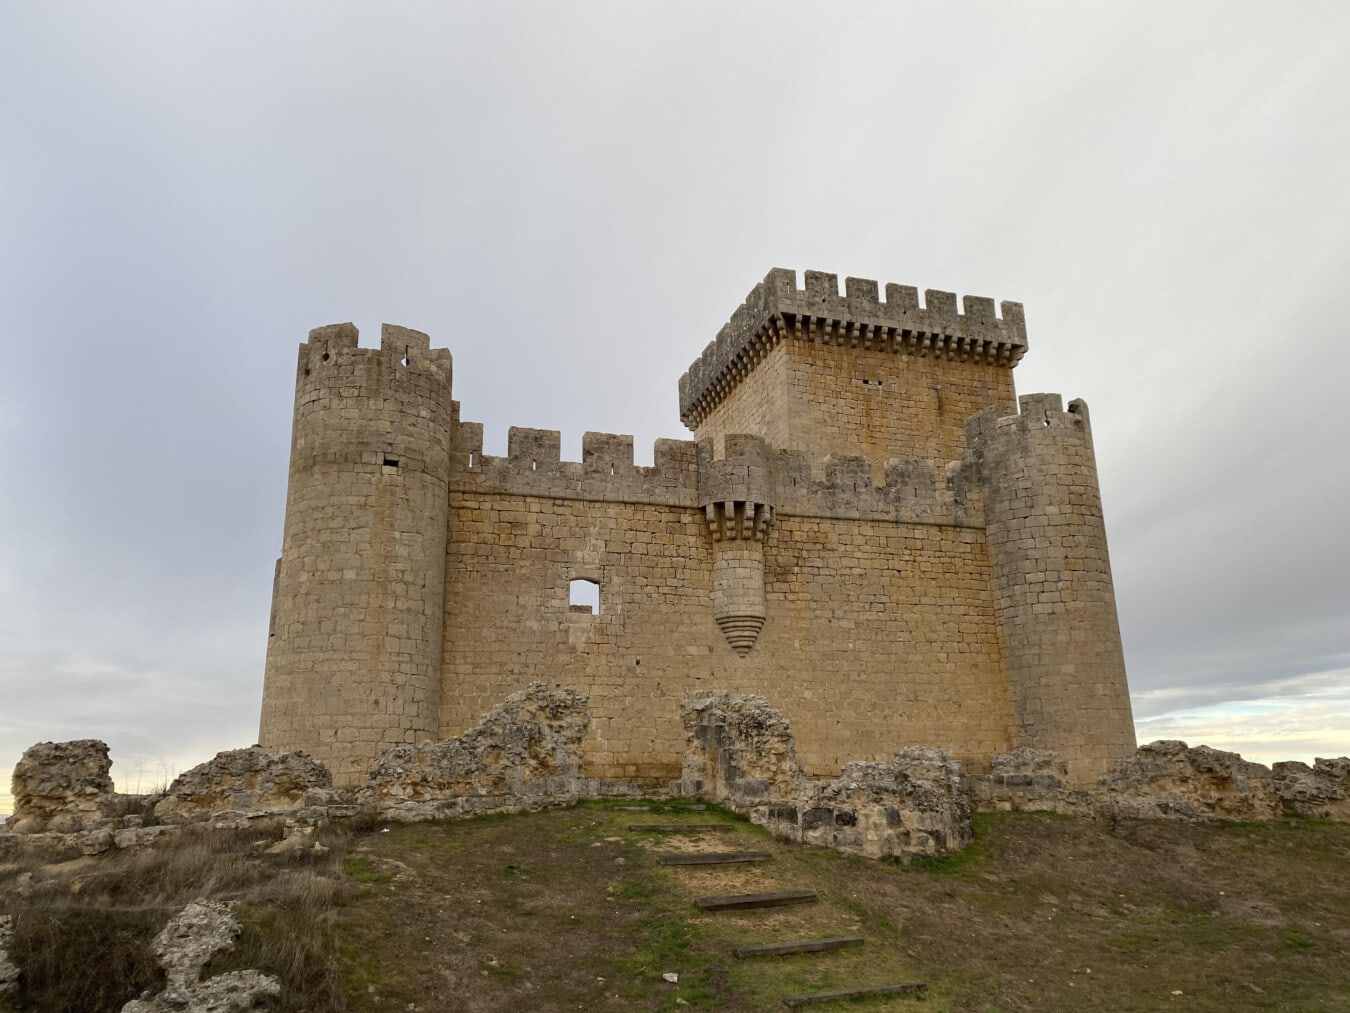 mittelalterliche, Festung, Schloss, Spanien, Befestigung, Wände, Turm, Wall, Schutz, Festung